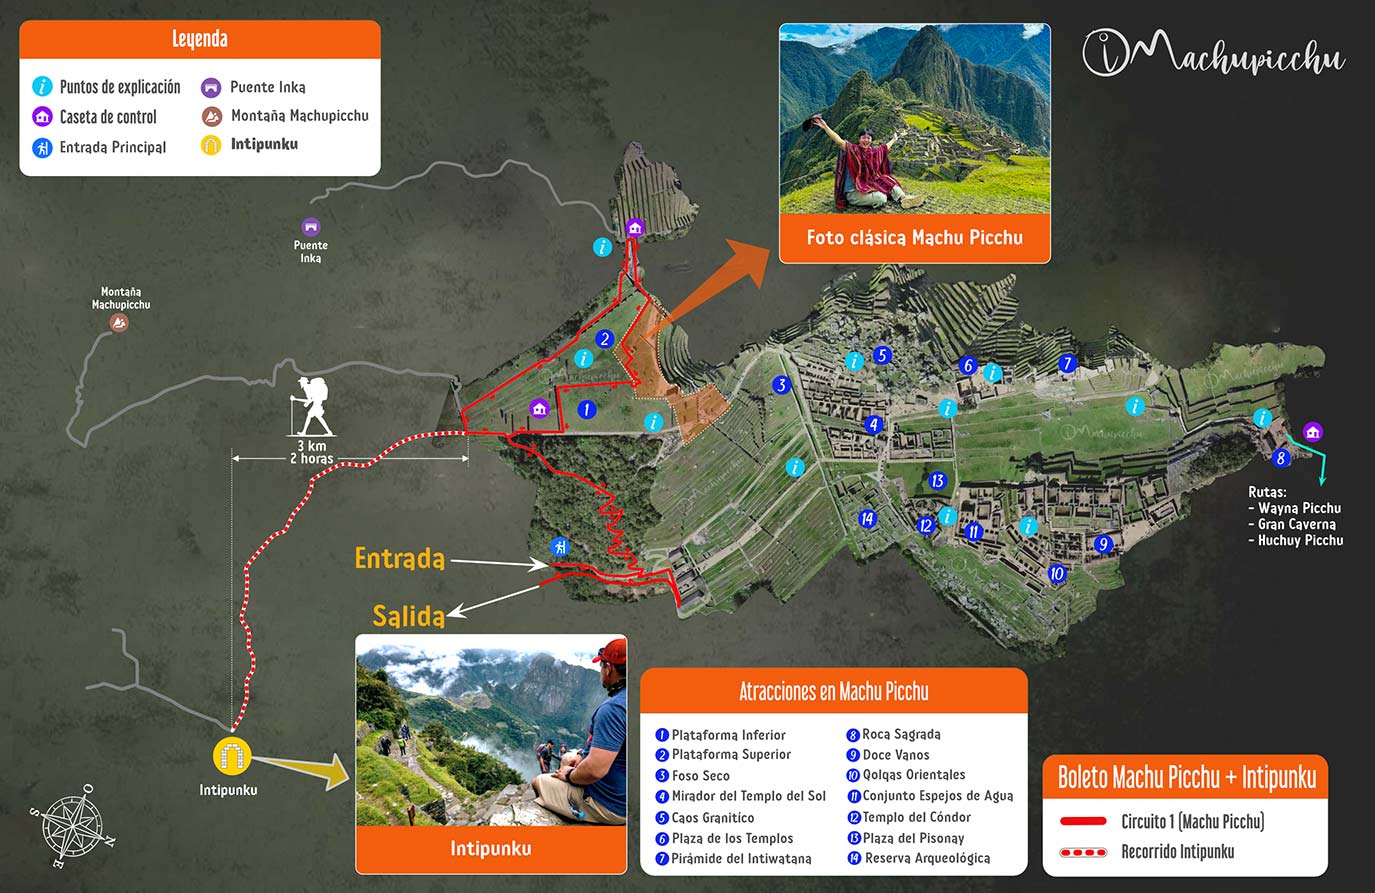 Mapa recorrido Machu Picchu + Inti Punku